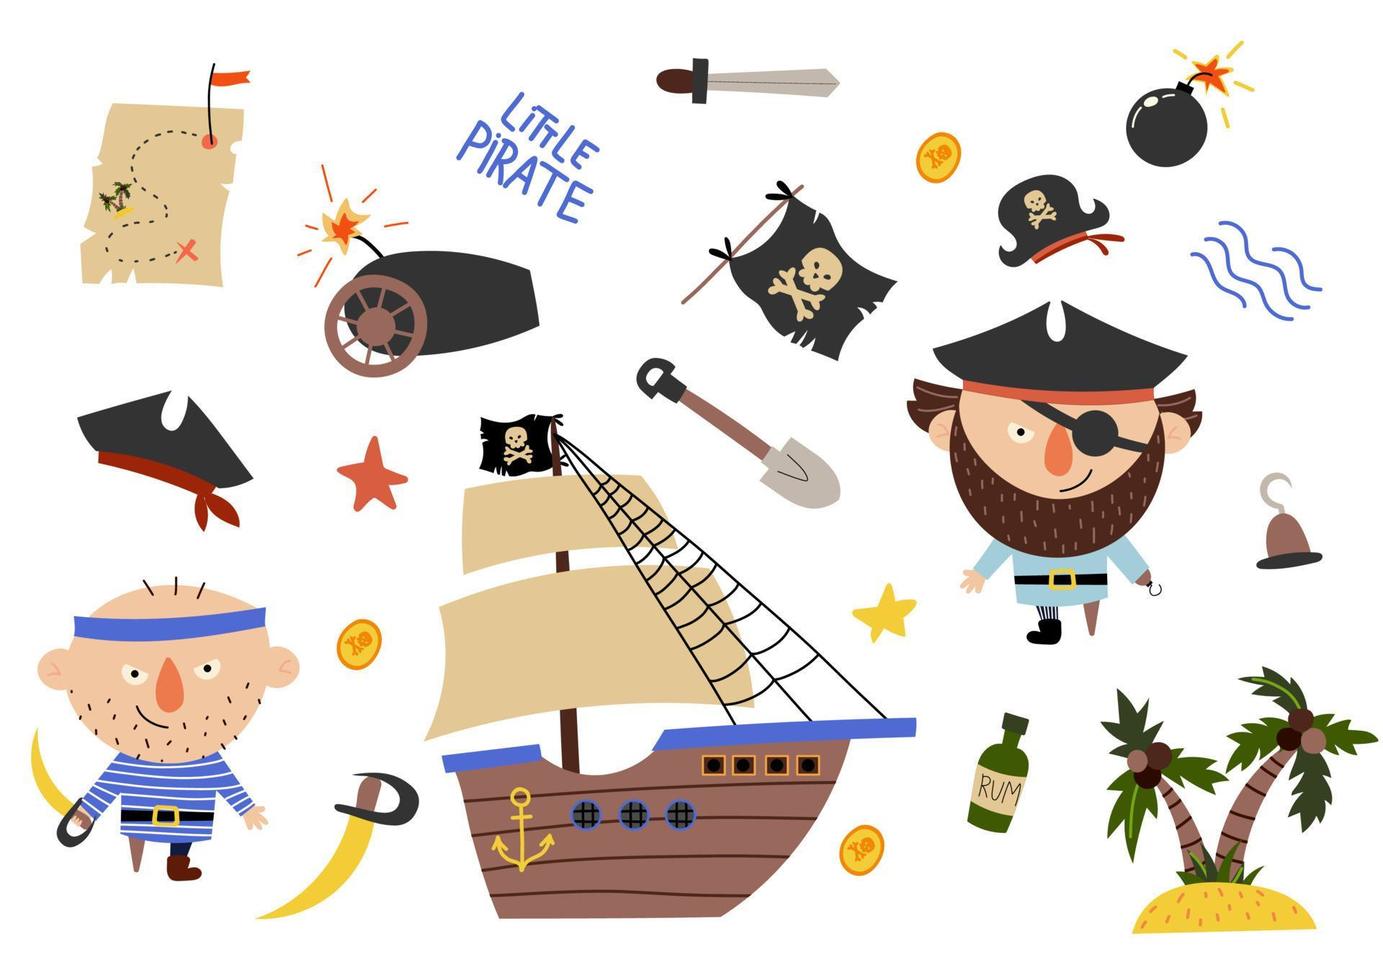 schöne Piraten im Cartoon-Stil. süße Karte mit Piraten, Schiff, Rum, Anker, Schatz, Insel. toller hintergrund in leuchtenden farben vektor